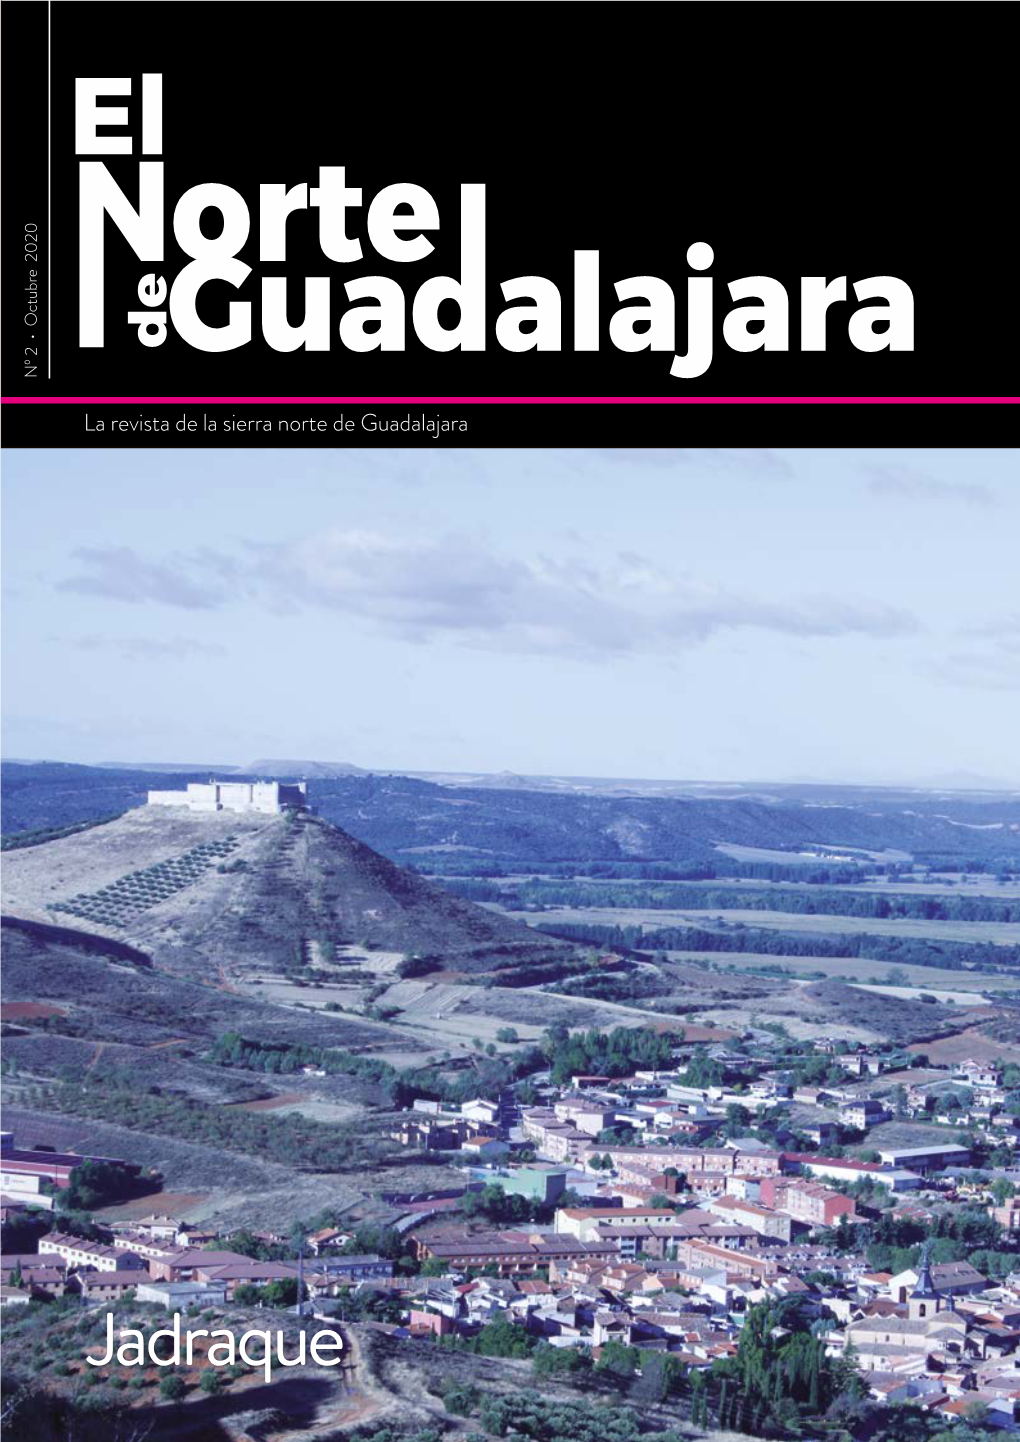 Guadalajara Jadraque De Romanillos De Atienza TRABAJOS Y SERVICIOS AGRICOLAS